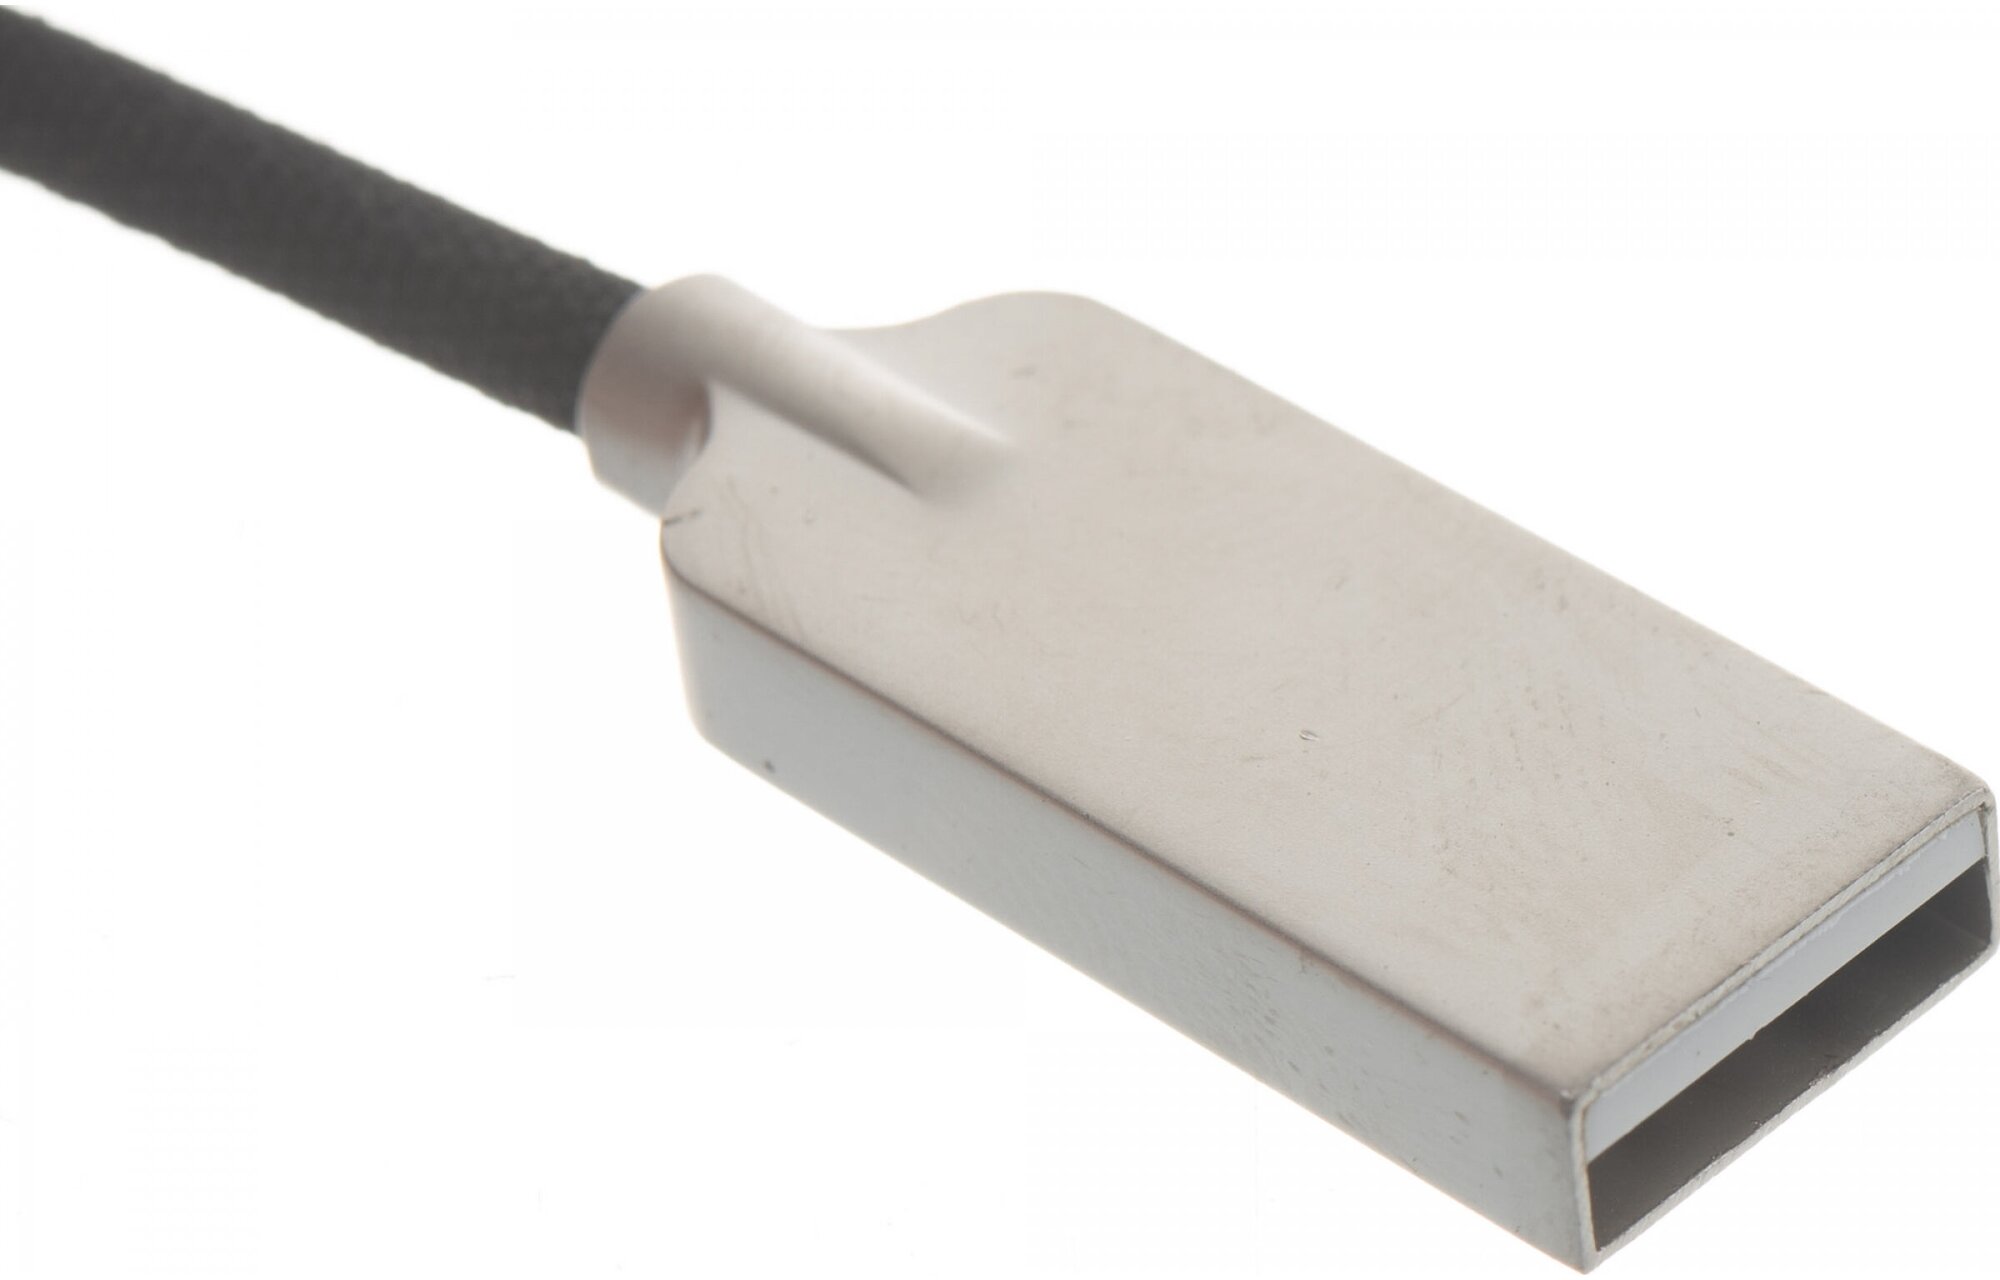 Micro USB кабель Cablexpert CC-P-mUSB02Bk-0.5M